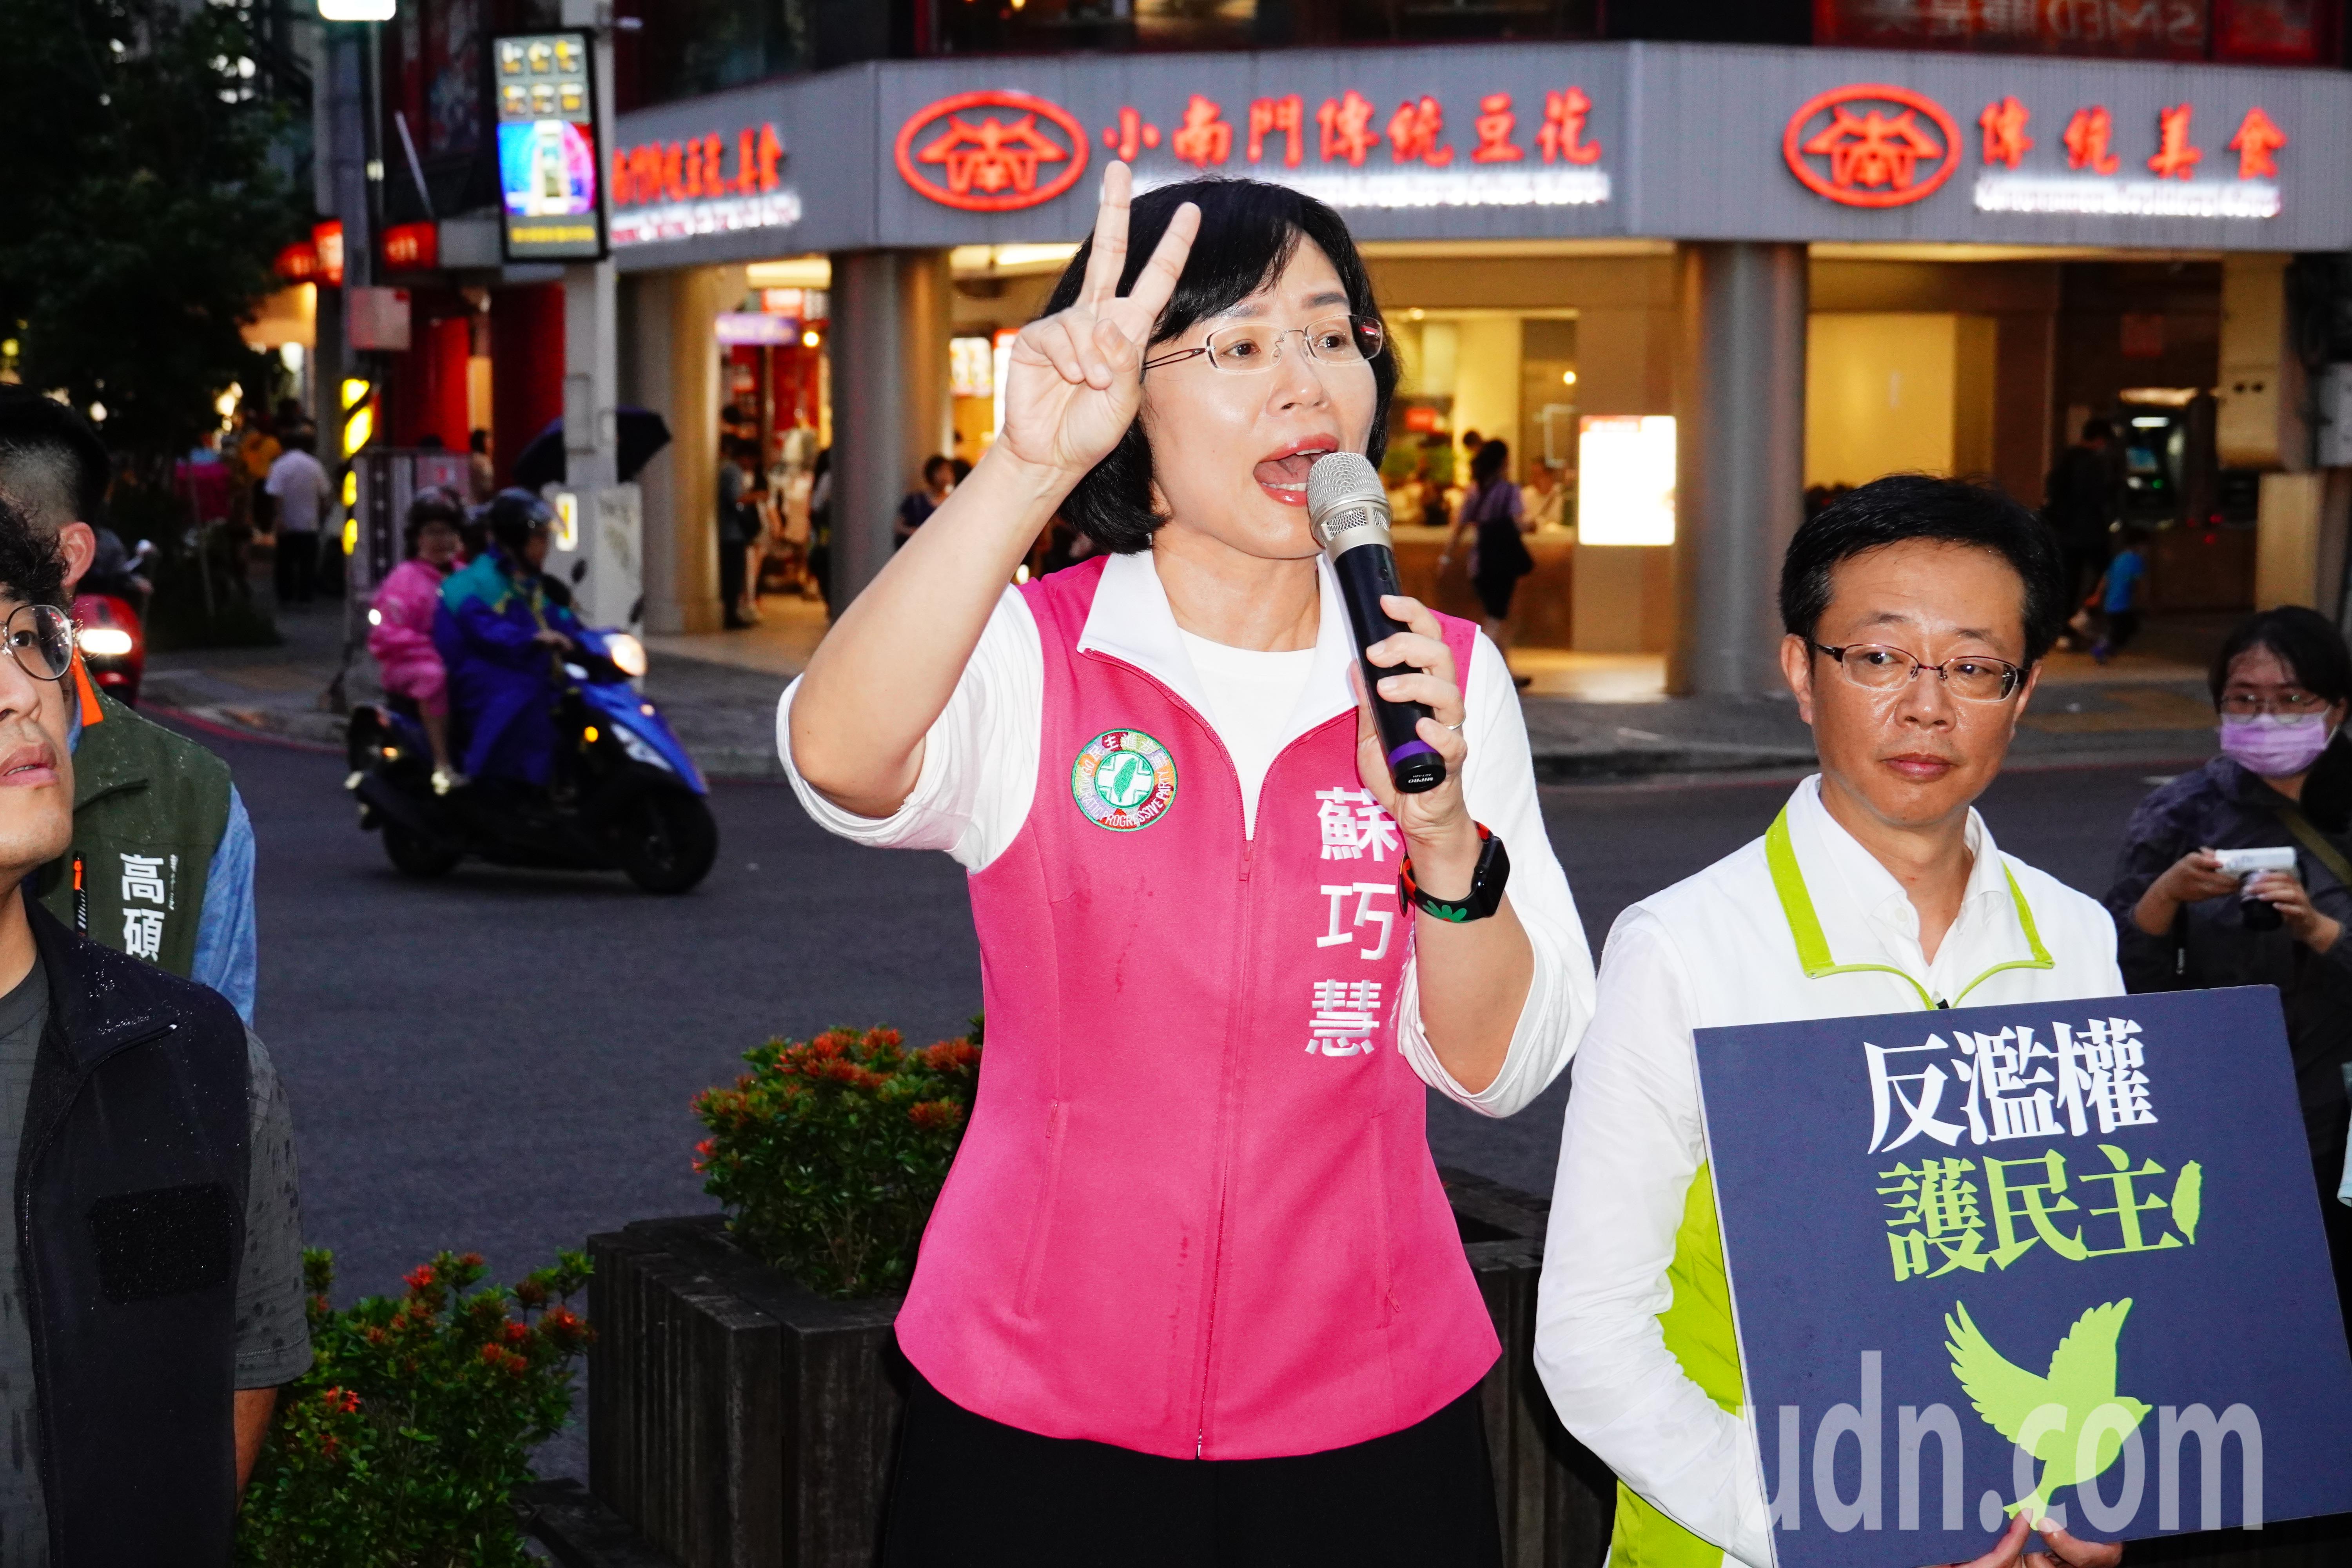 民进党新北市党部在6区举办街头宣讲。记者刘懿萱／摄影